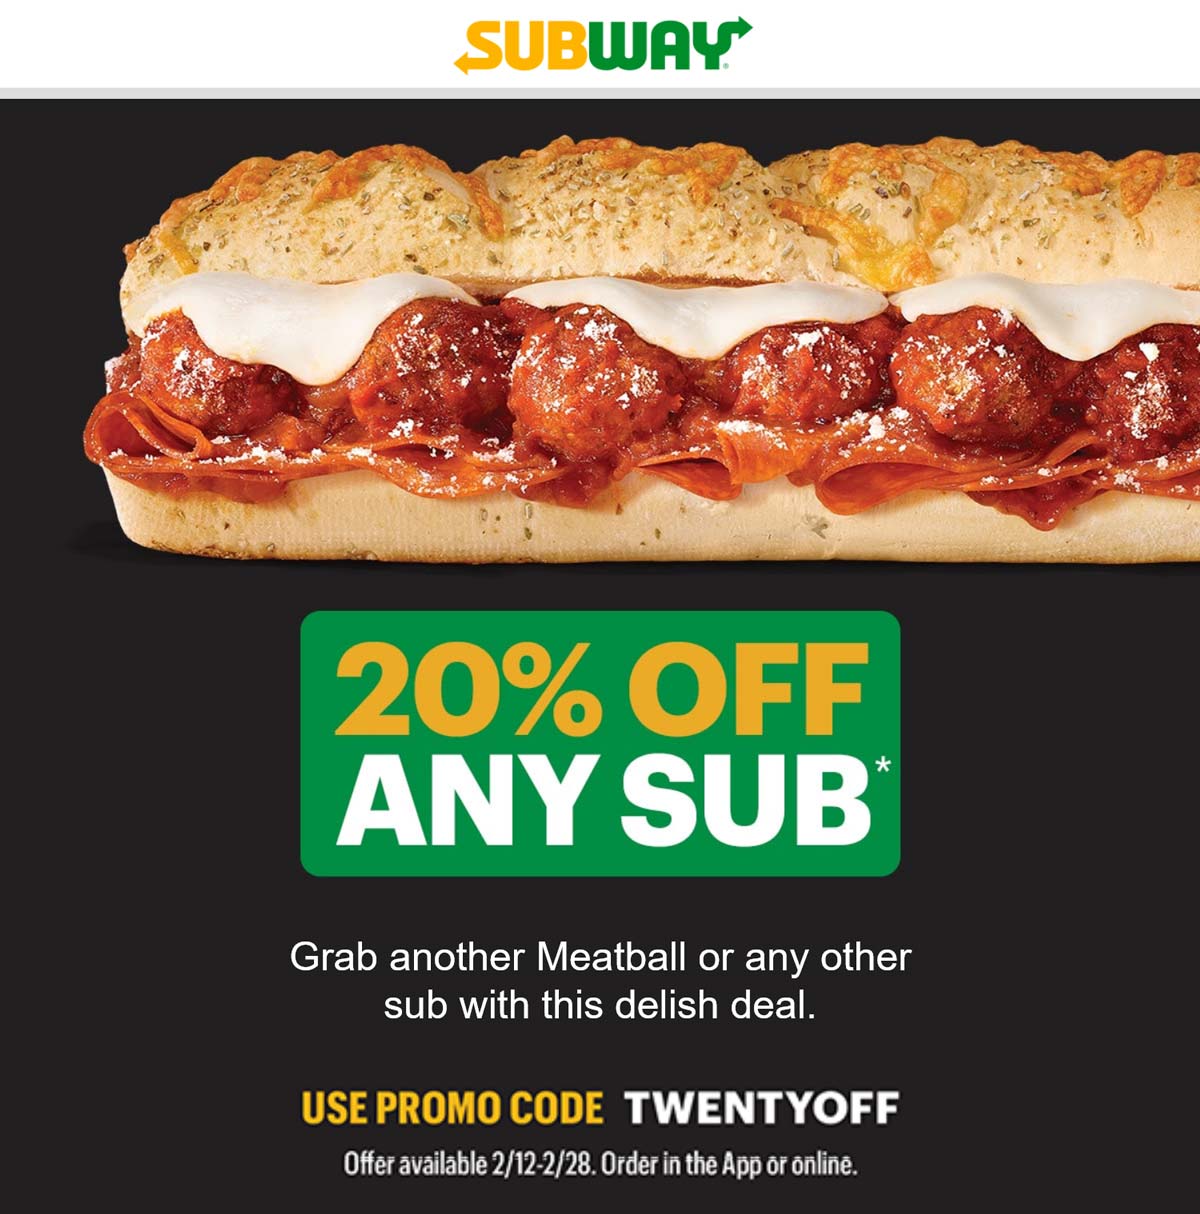 Subway restaurants Coupon  20% off any sub today at Subway via promo code TWENTYOFF #subway 